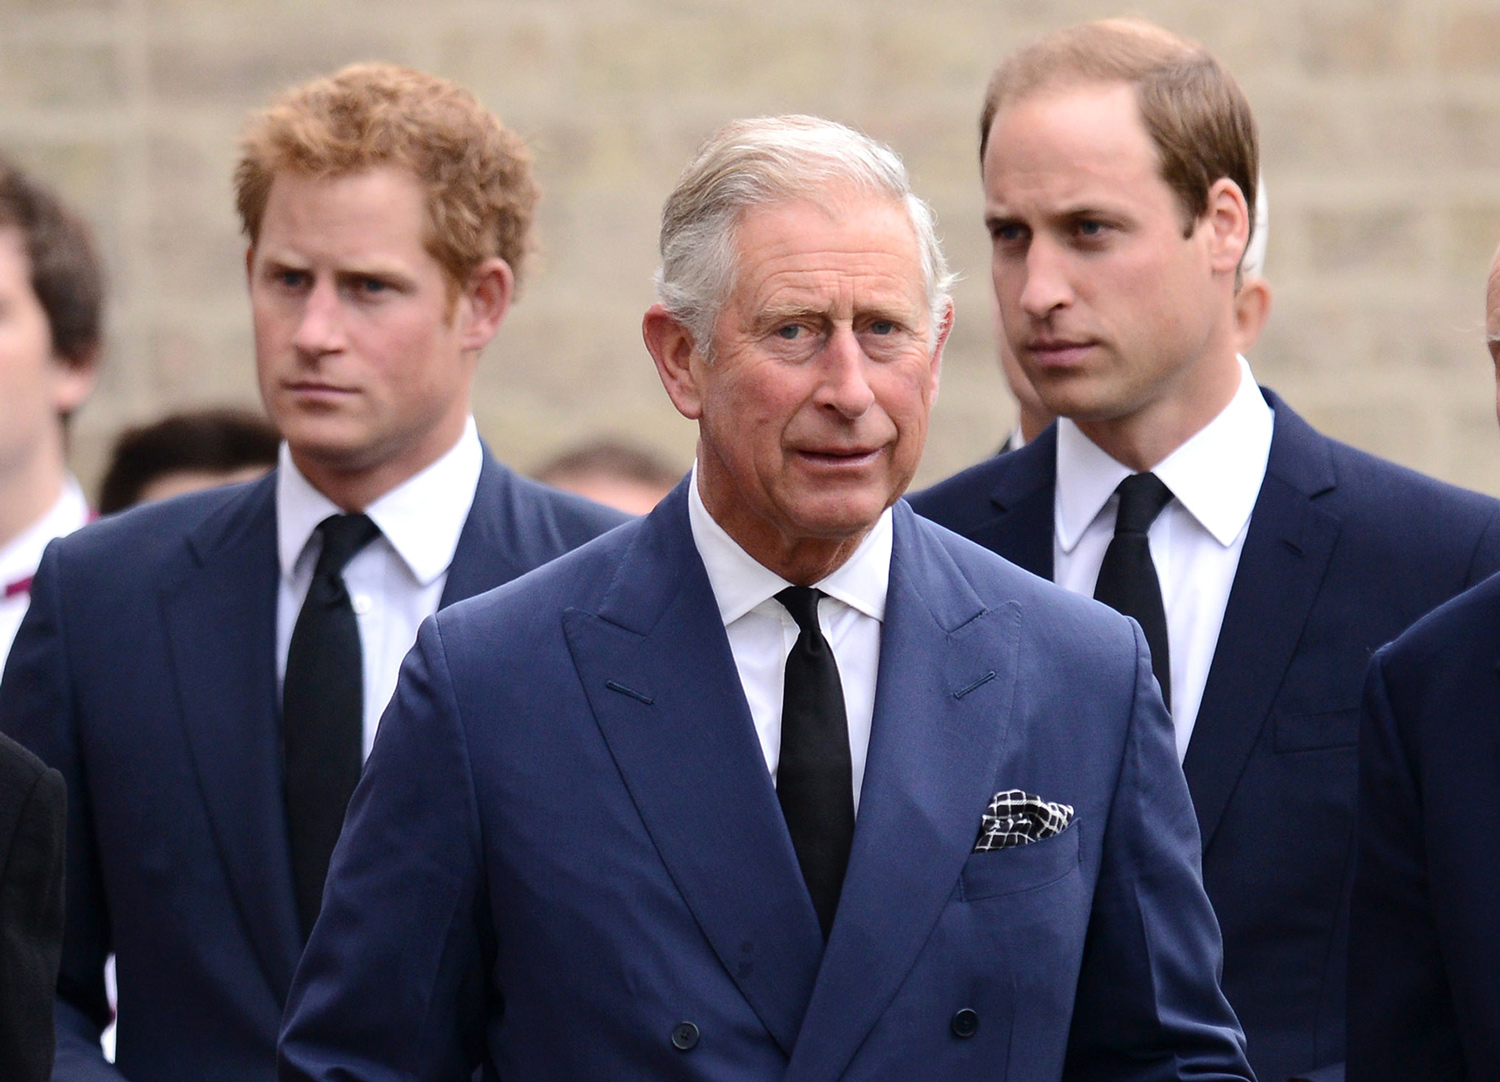 El príncipe William debería ser el próximo rey y no Carlos